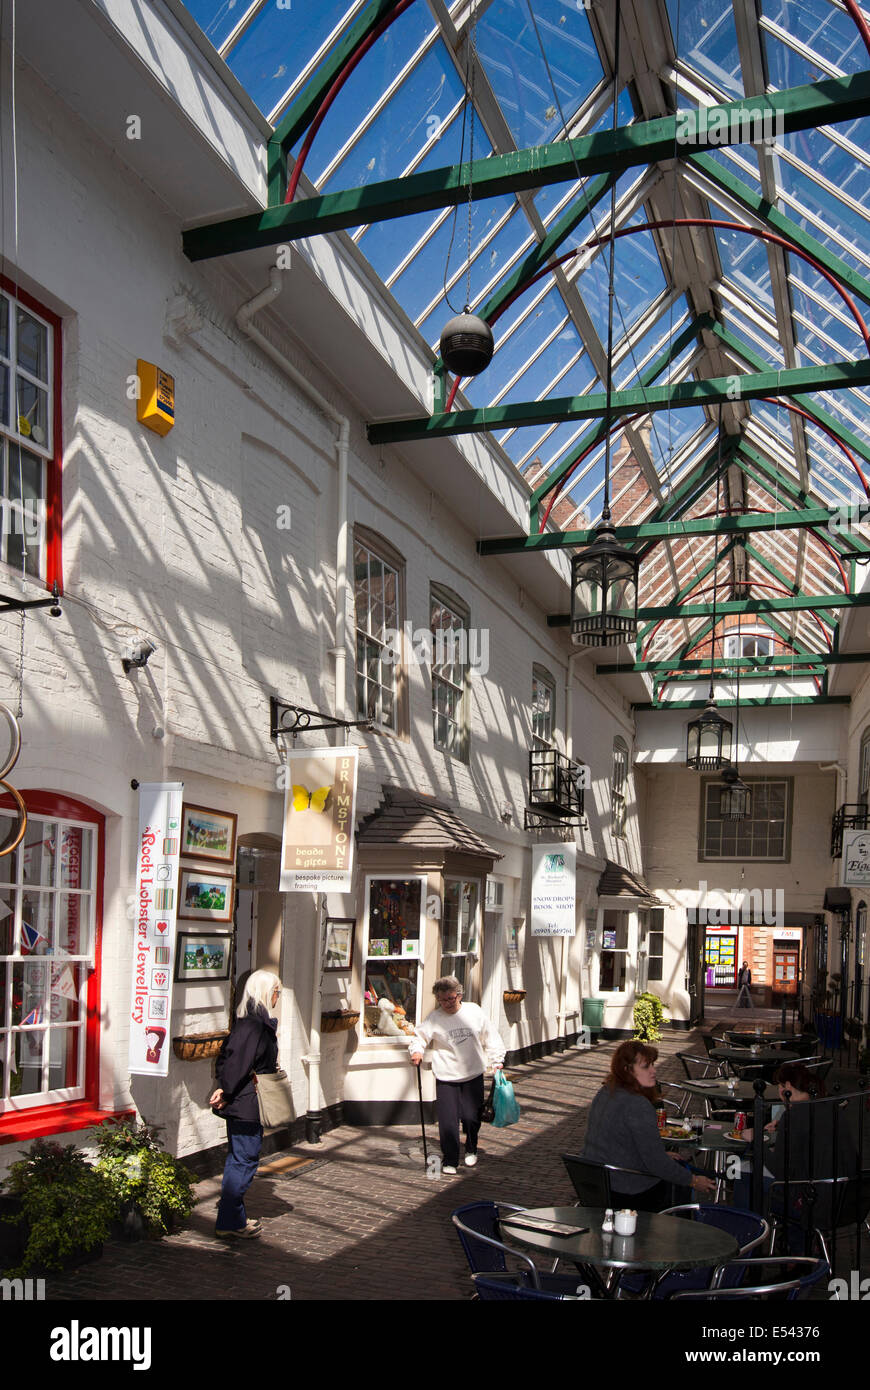 Regno Unito, Inghilterra, Worcestershire, Worcester, renne corte, shopping arcade nel cortile della vecchia coaching inn Foto Stock